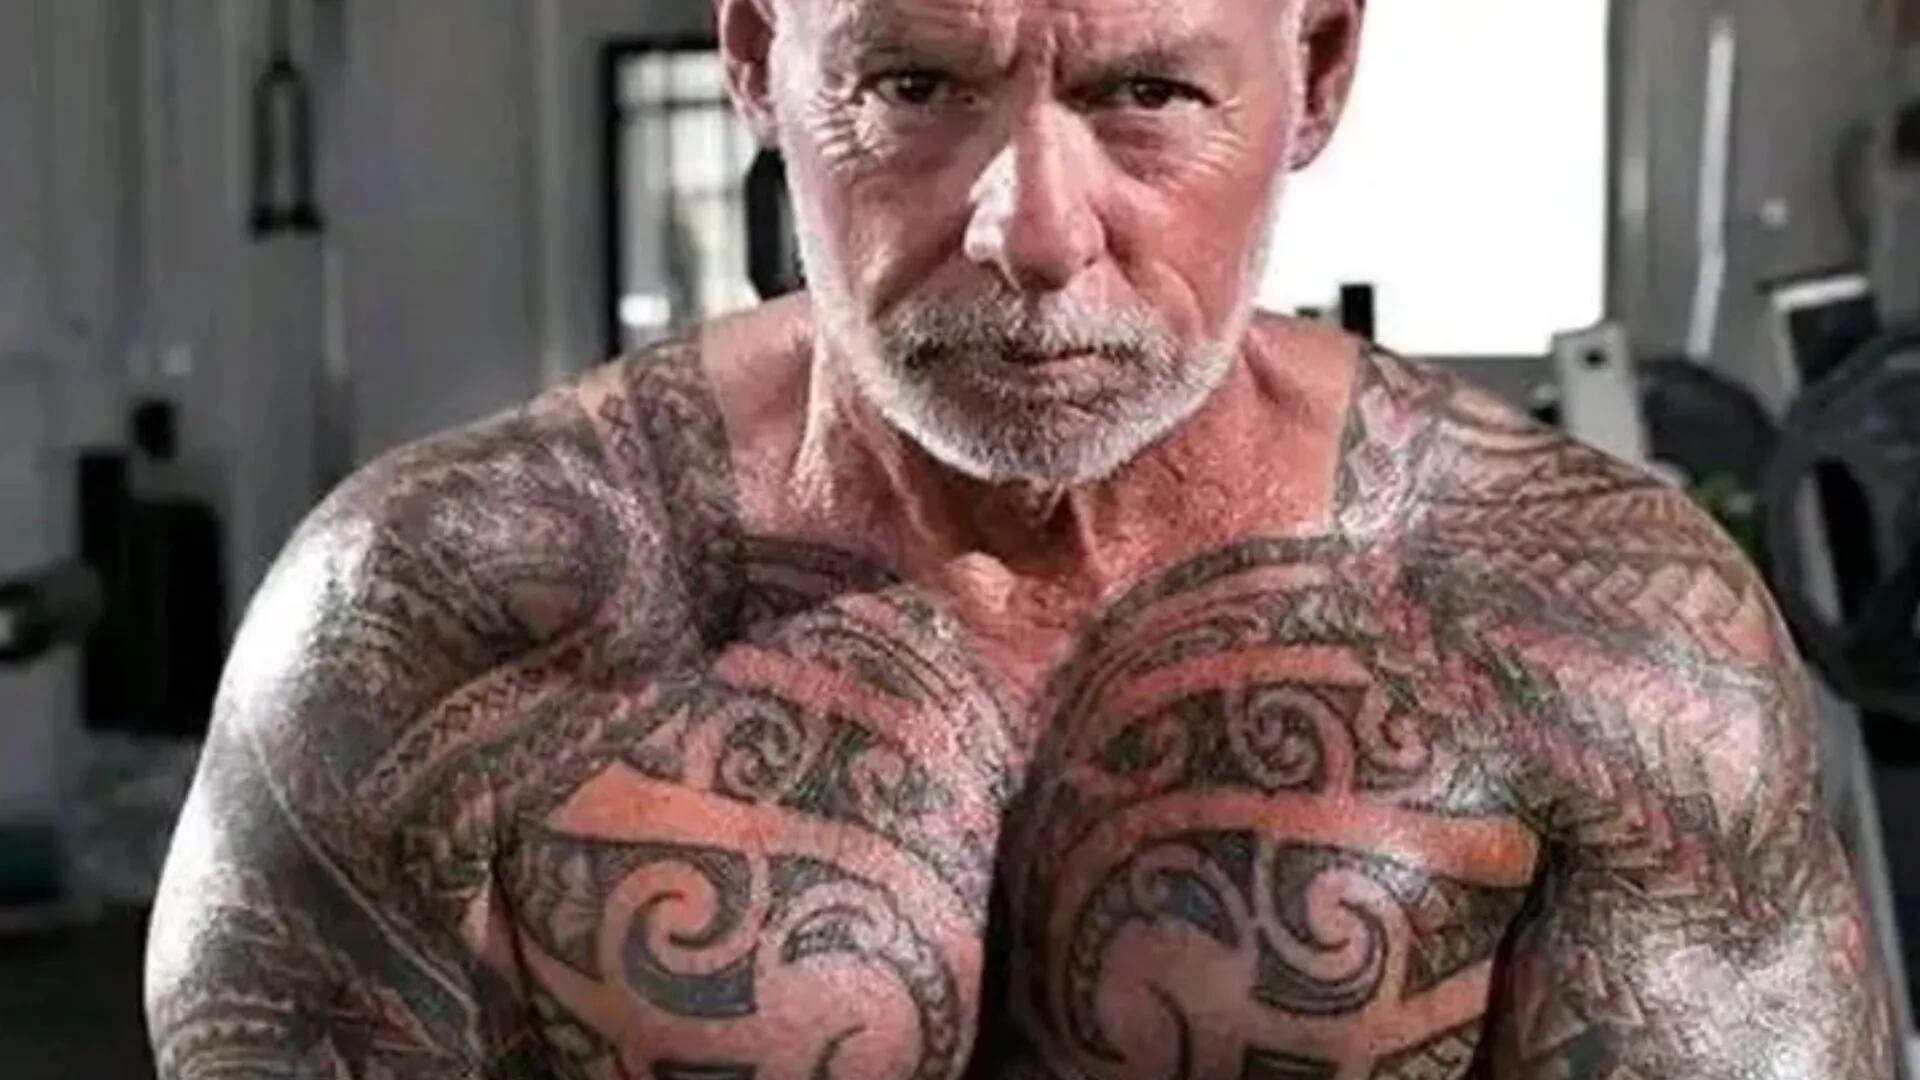 Tiene 65 años y gastó miles de dólares para cubrir hasta las partes íntimas de su cuerpo con tatuajes: “Era incómodo caminar”